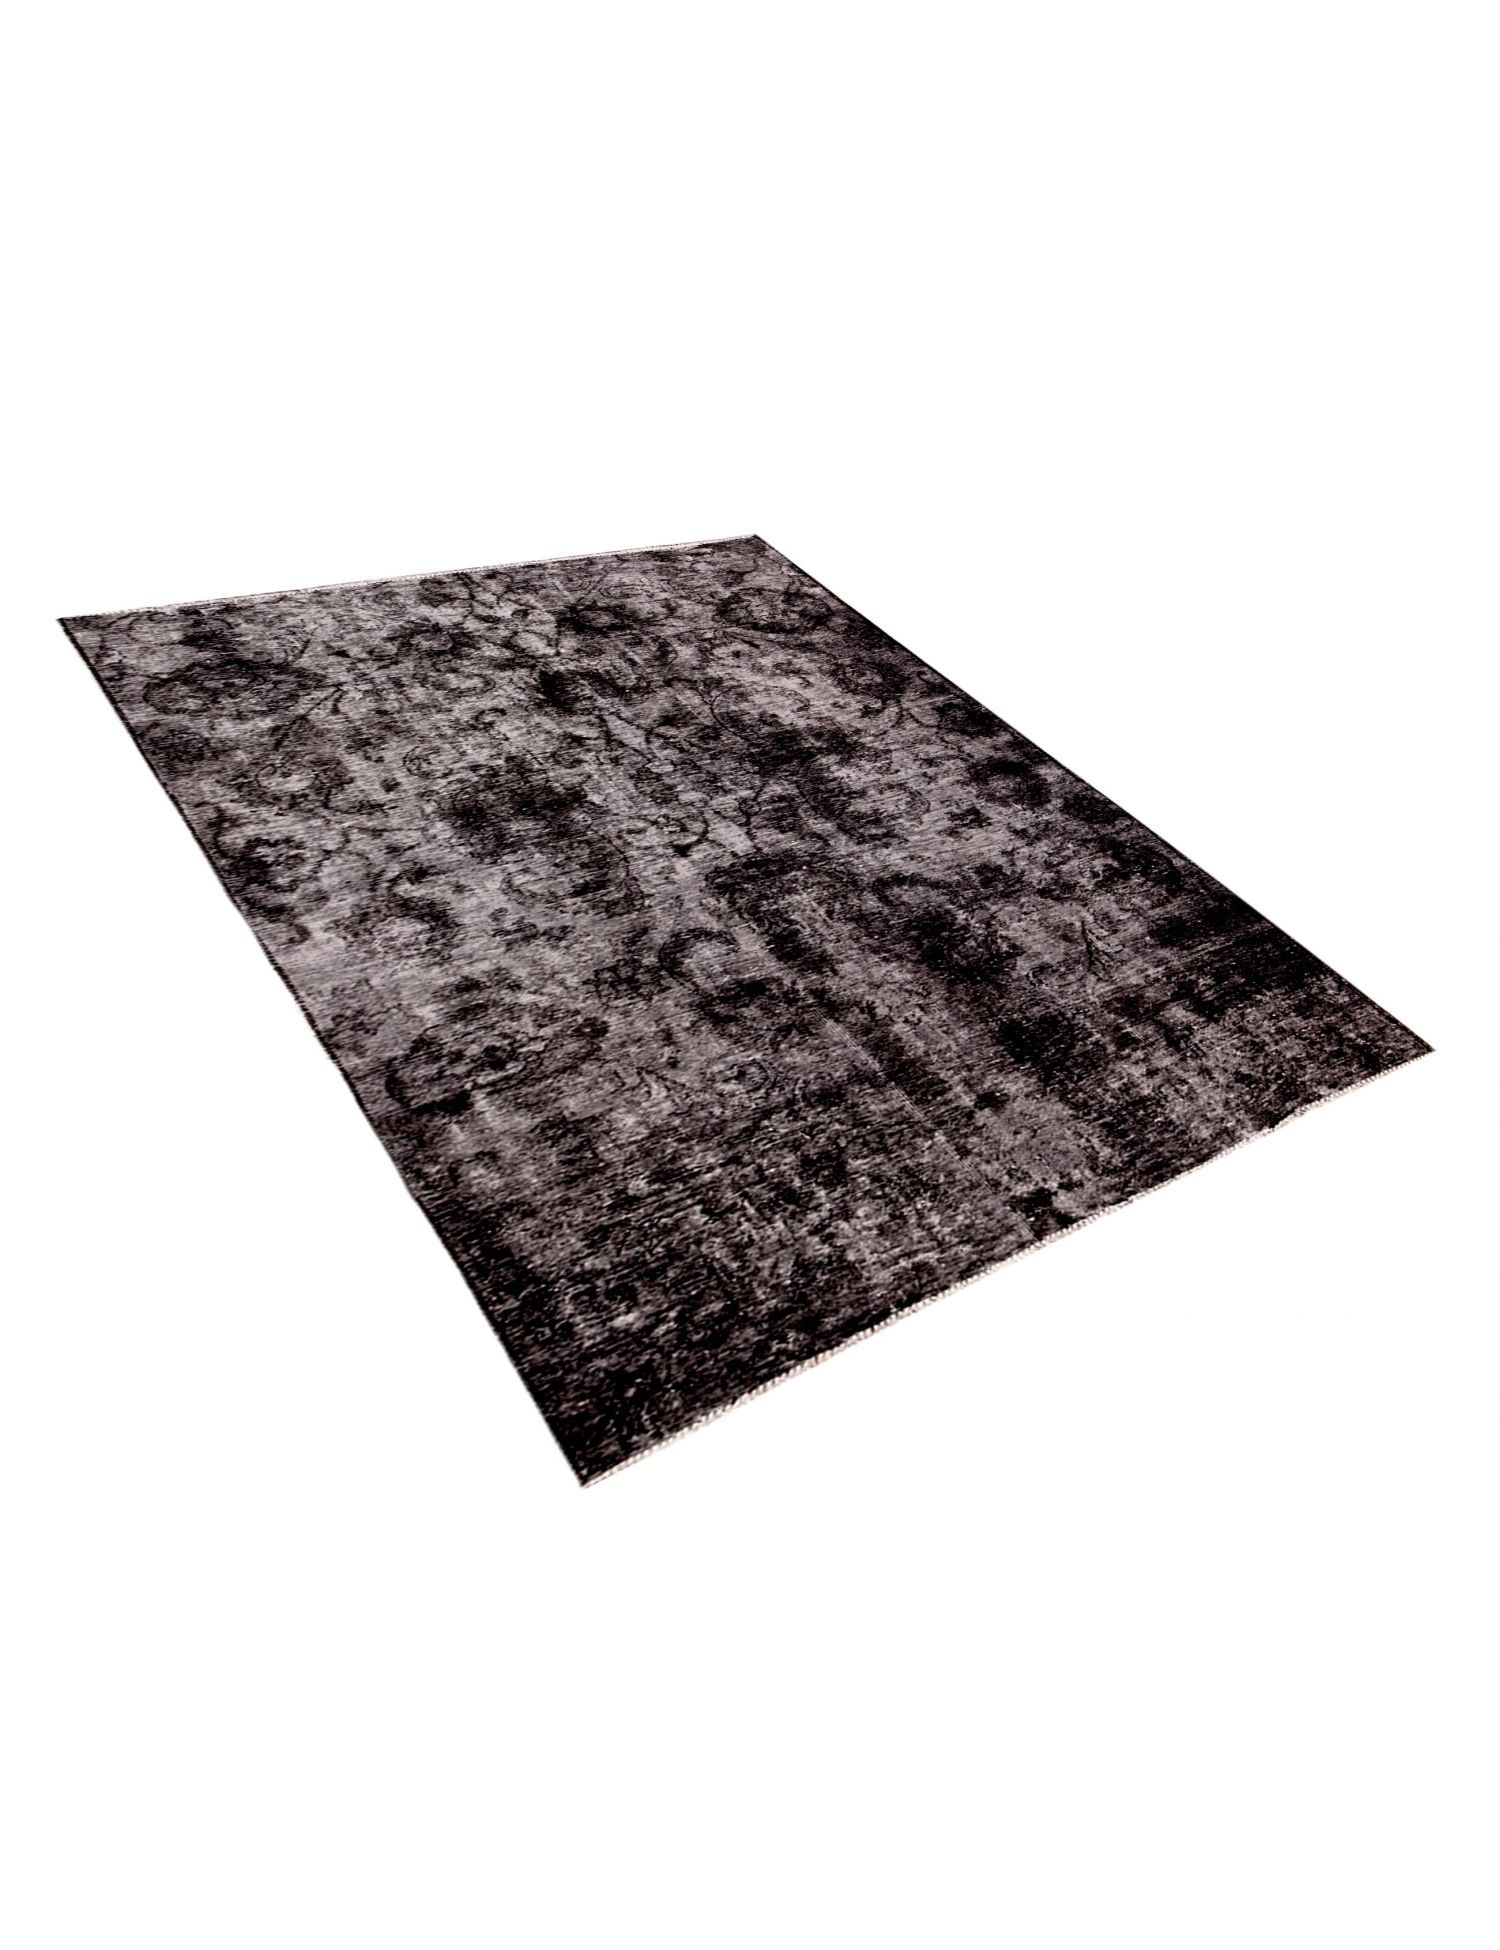 Persian Vintage Carpet  black <br/>210 x 130 cm